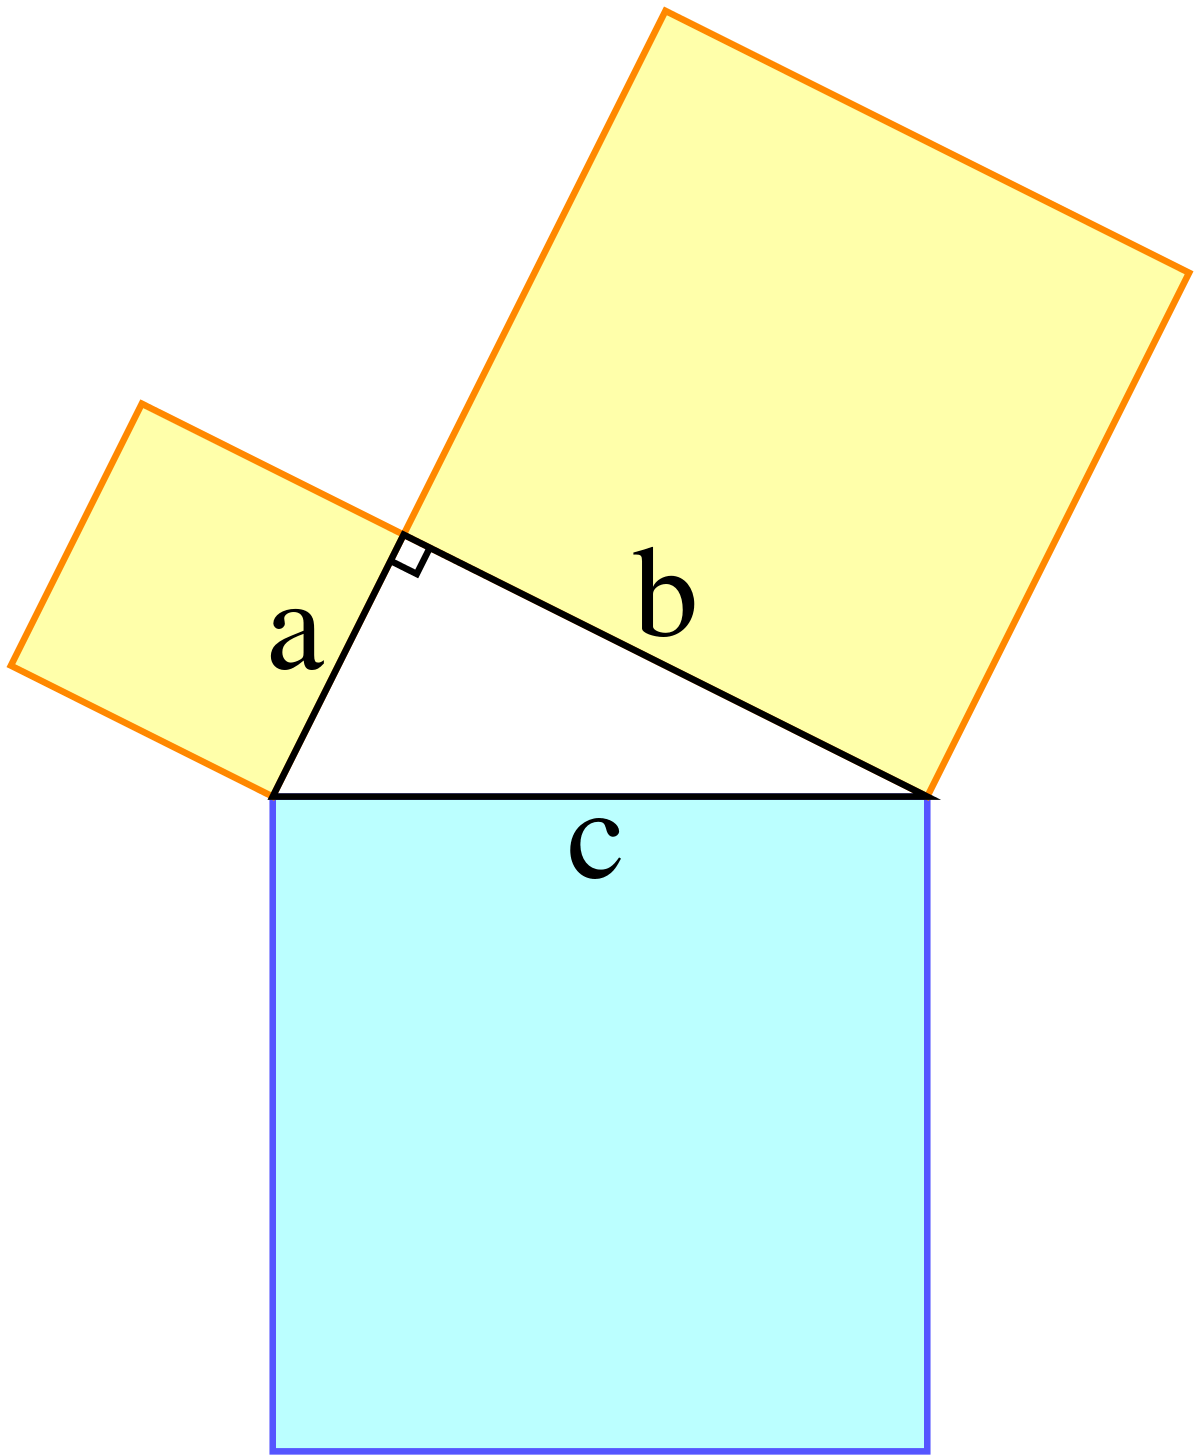 teorema de pitágoras inverso - Grado 10 - Quizizz